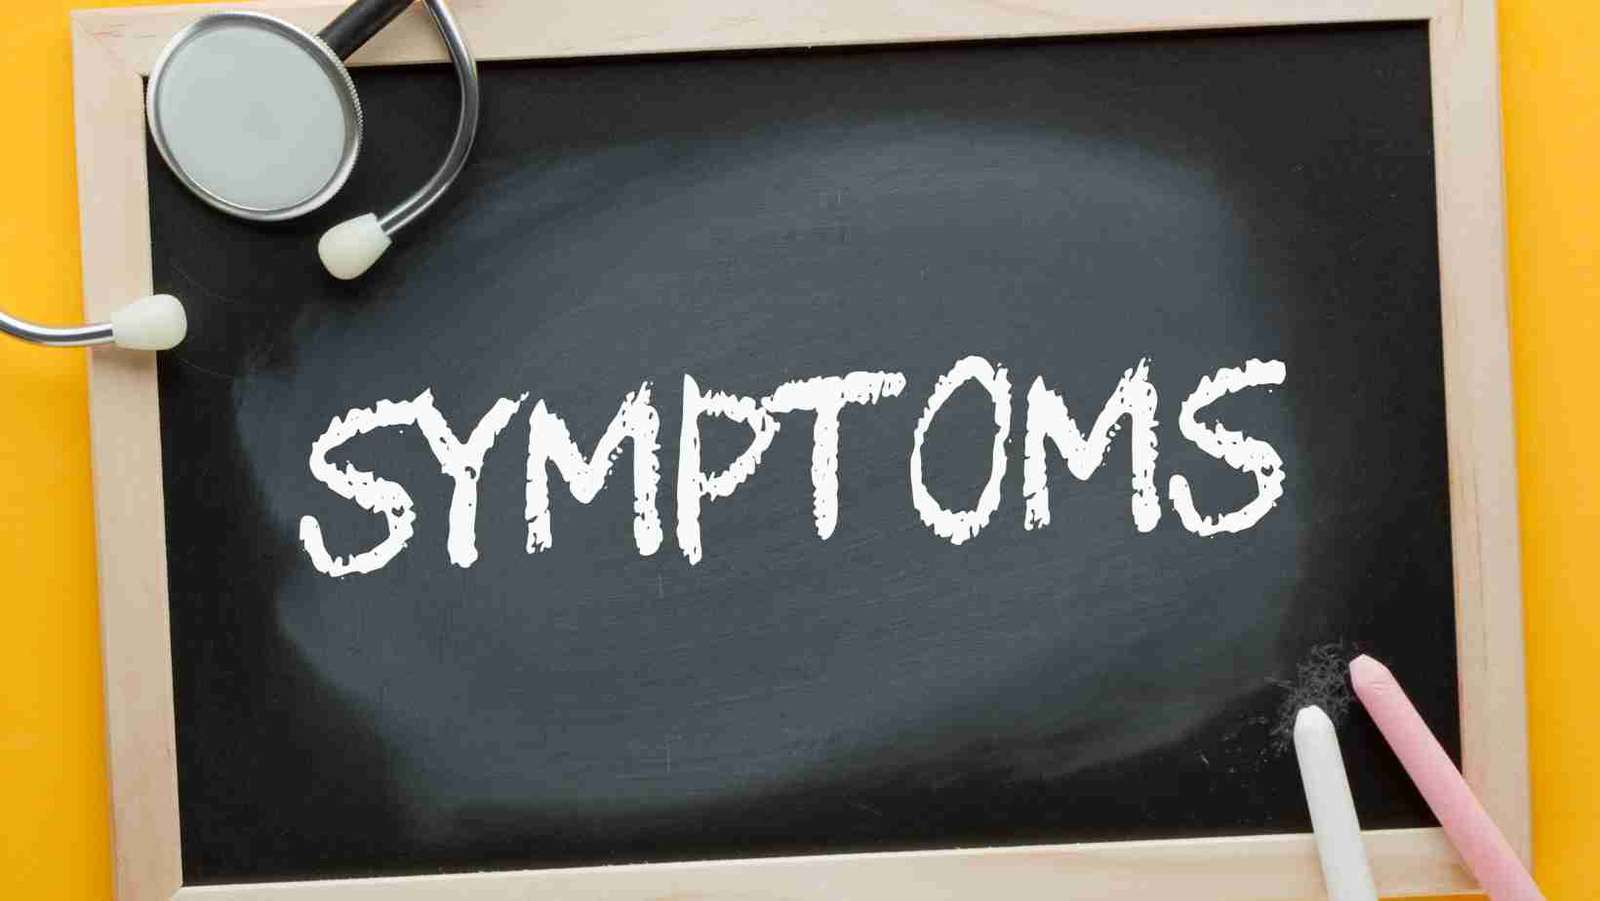 Symptoms of the Pedriatic Brain